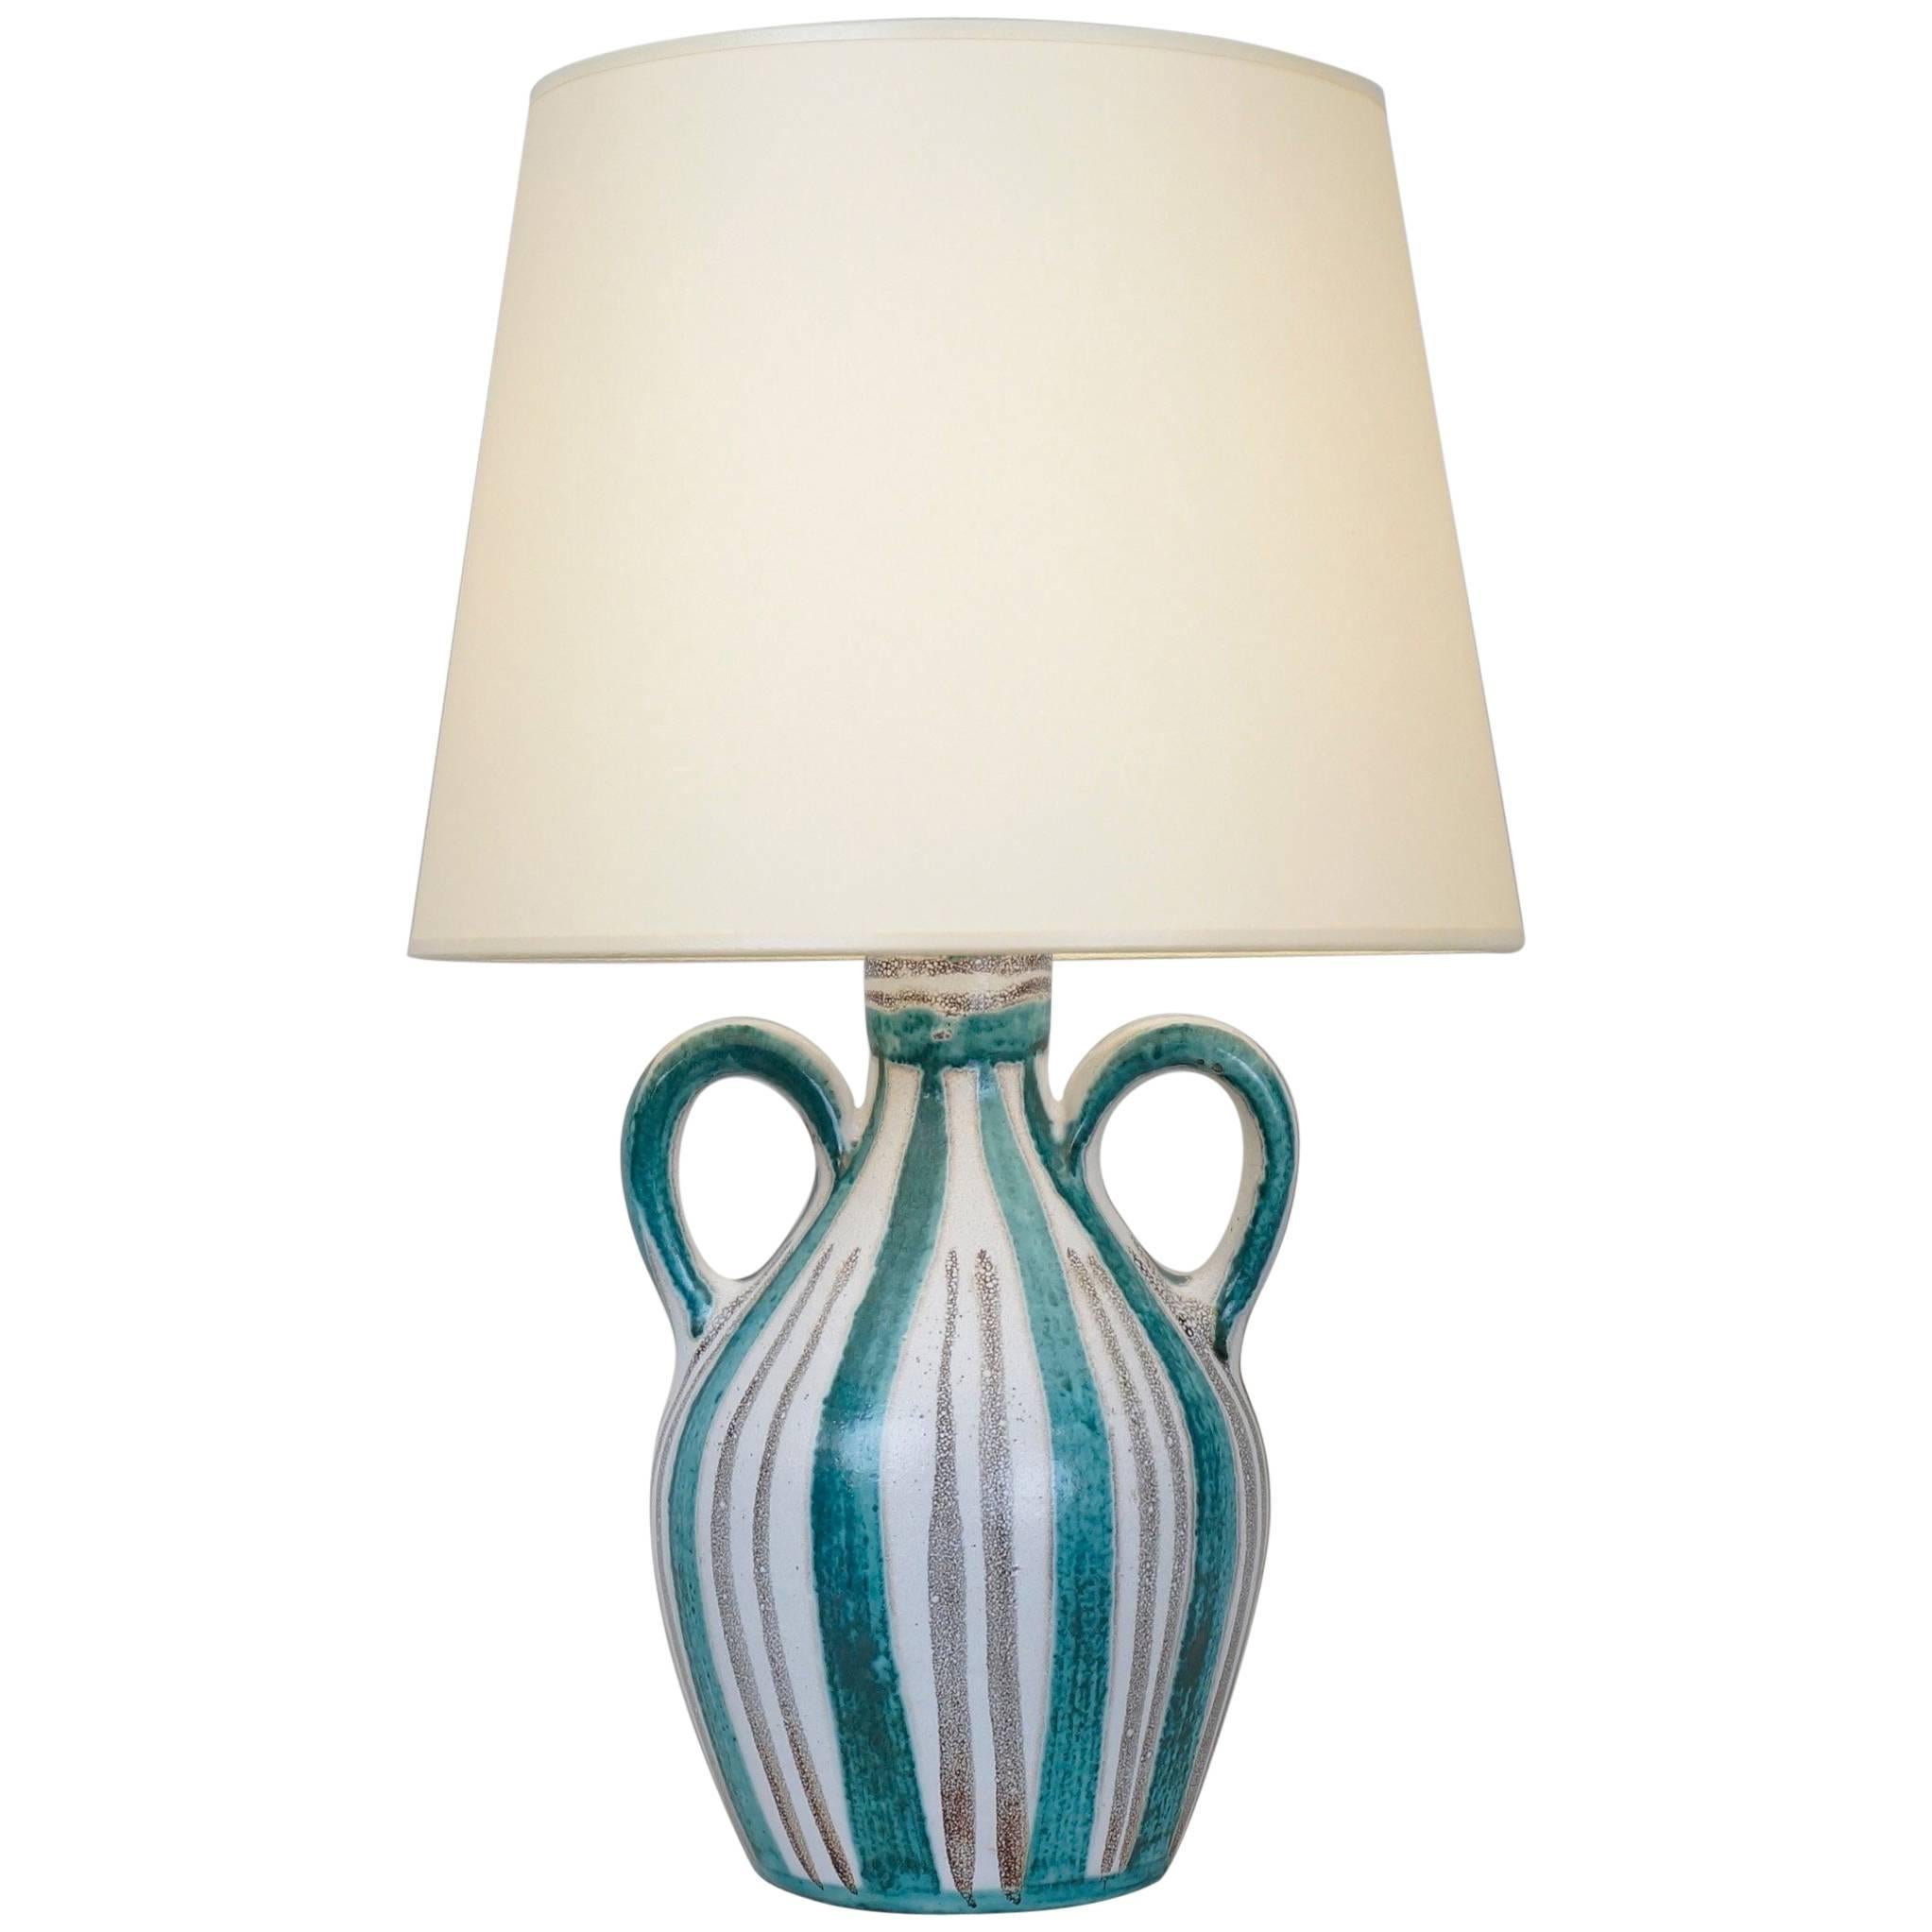 R Picault Ceramic Table Lamp